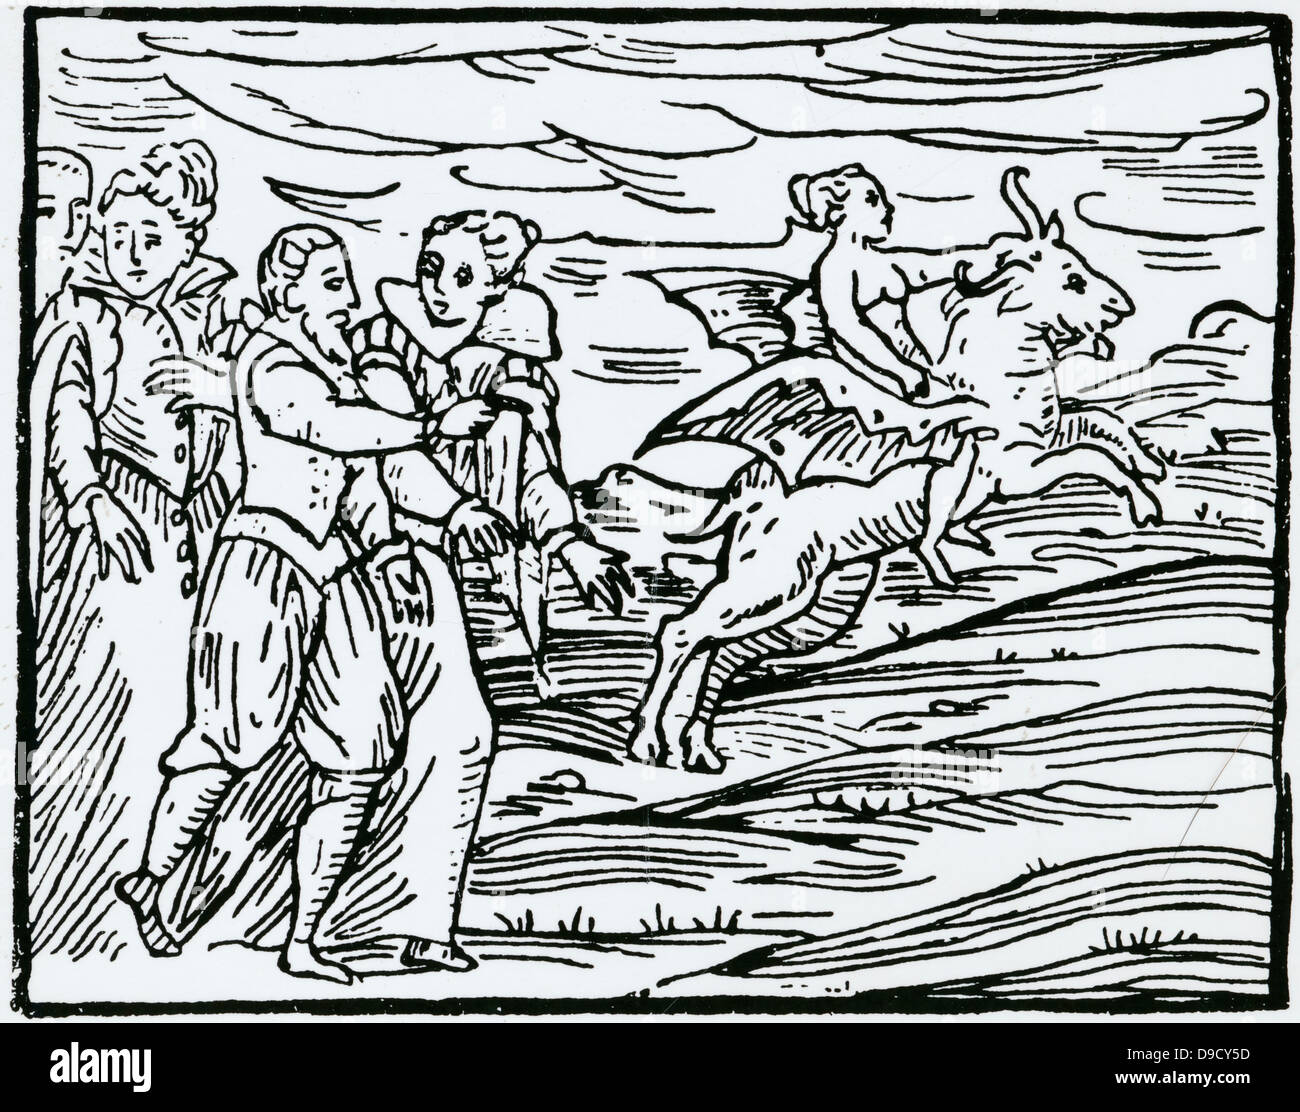 Le Diable, sous la forme d'une chèvre en vol, transportant une sorcière pour le Sabbat. Gravure sur bois d'Copmpendium maleficarum, Milan, 1608, par Francesco Maria Guazzo. Banque D'Images